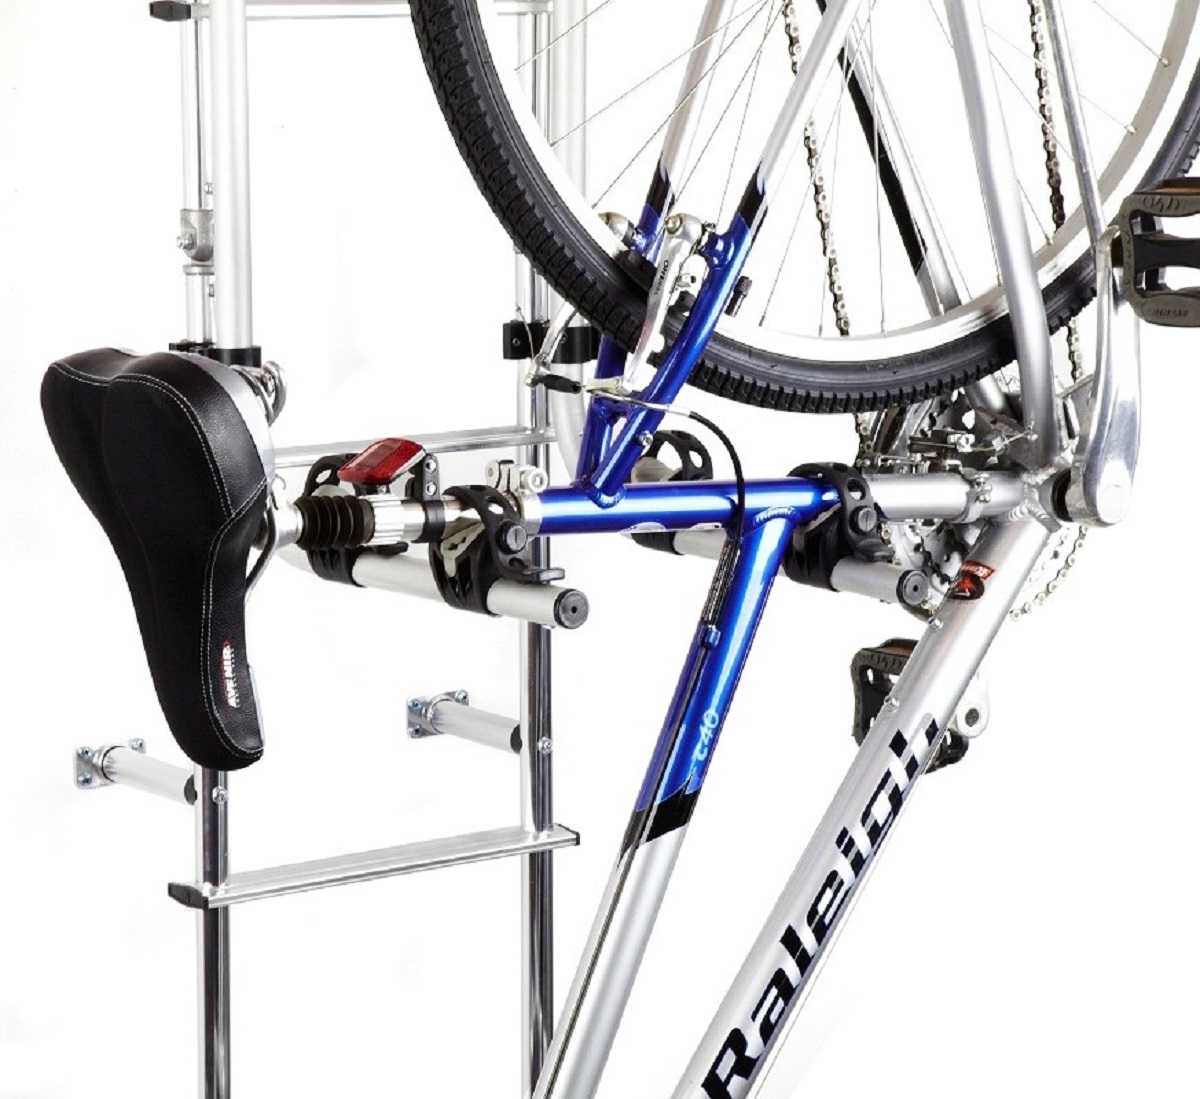 a frame bike rack